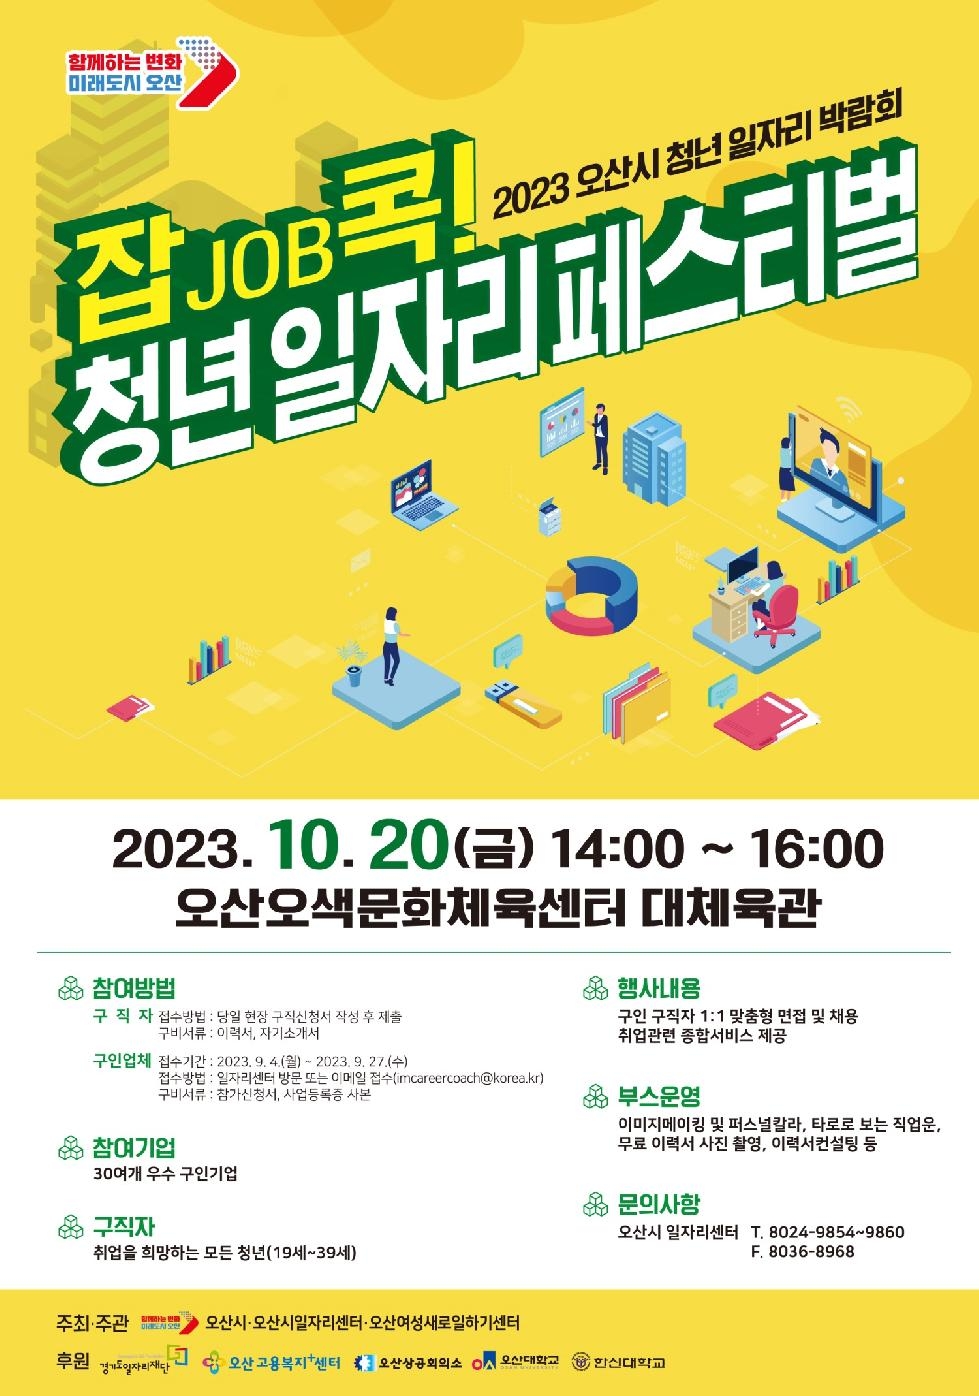 오산시 청년 일자리 박람회‘잡job콕! 청년 일자리 페스티벌’개최